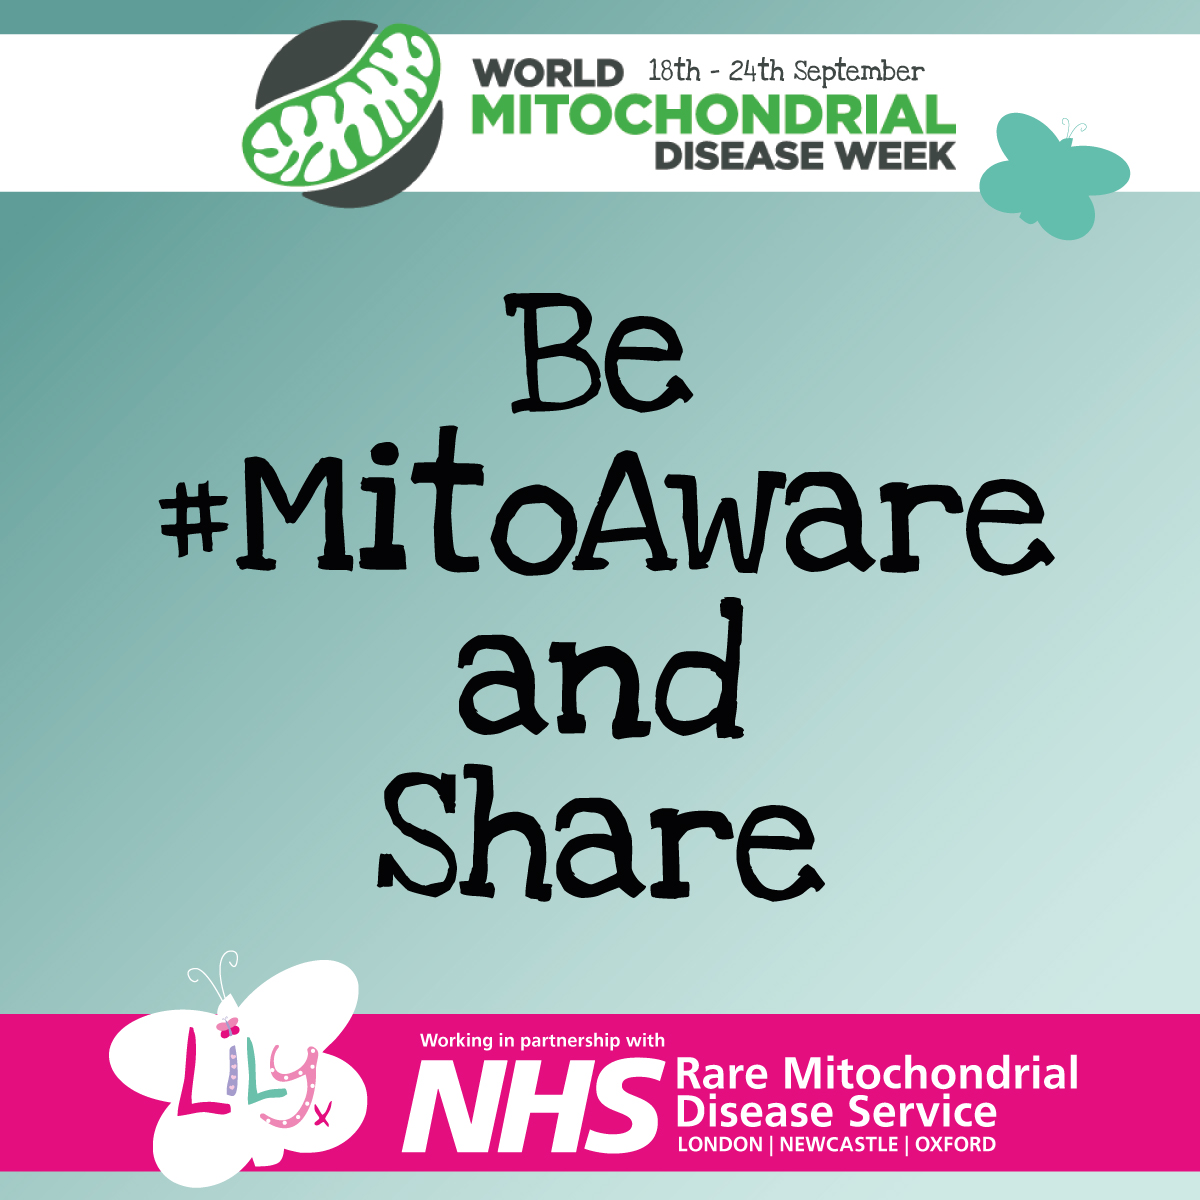 mitochondrial disease awareness week 2022